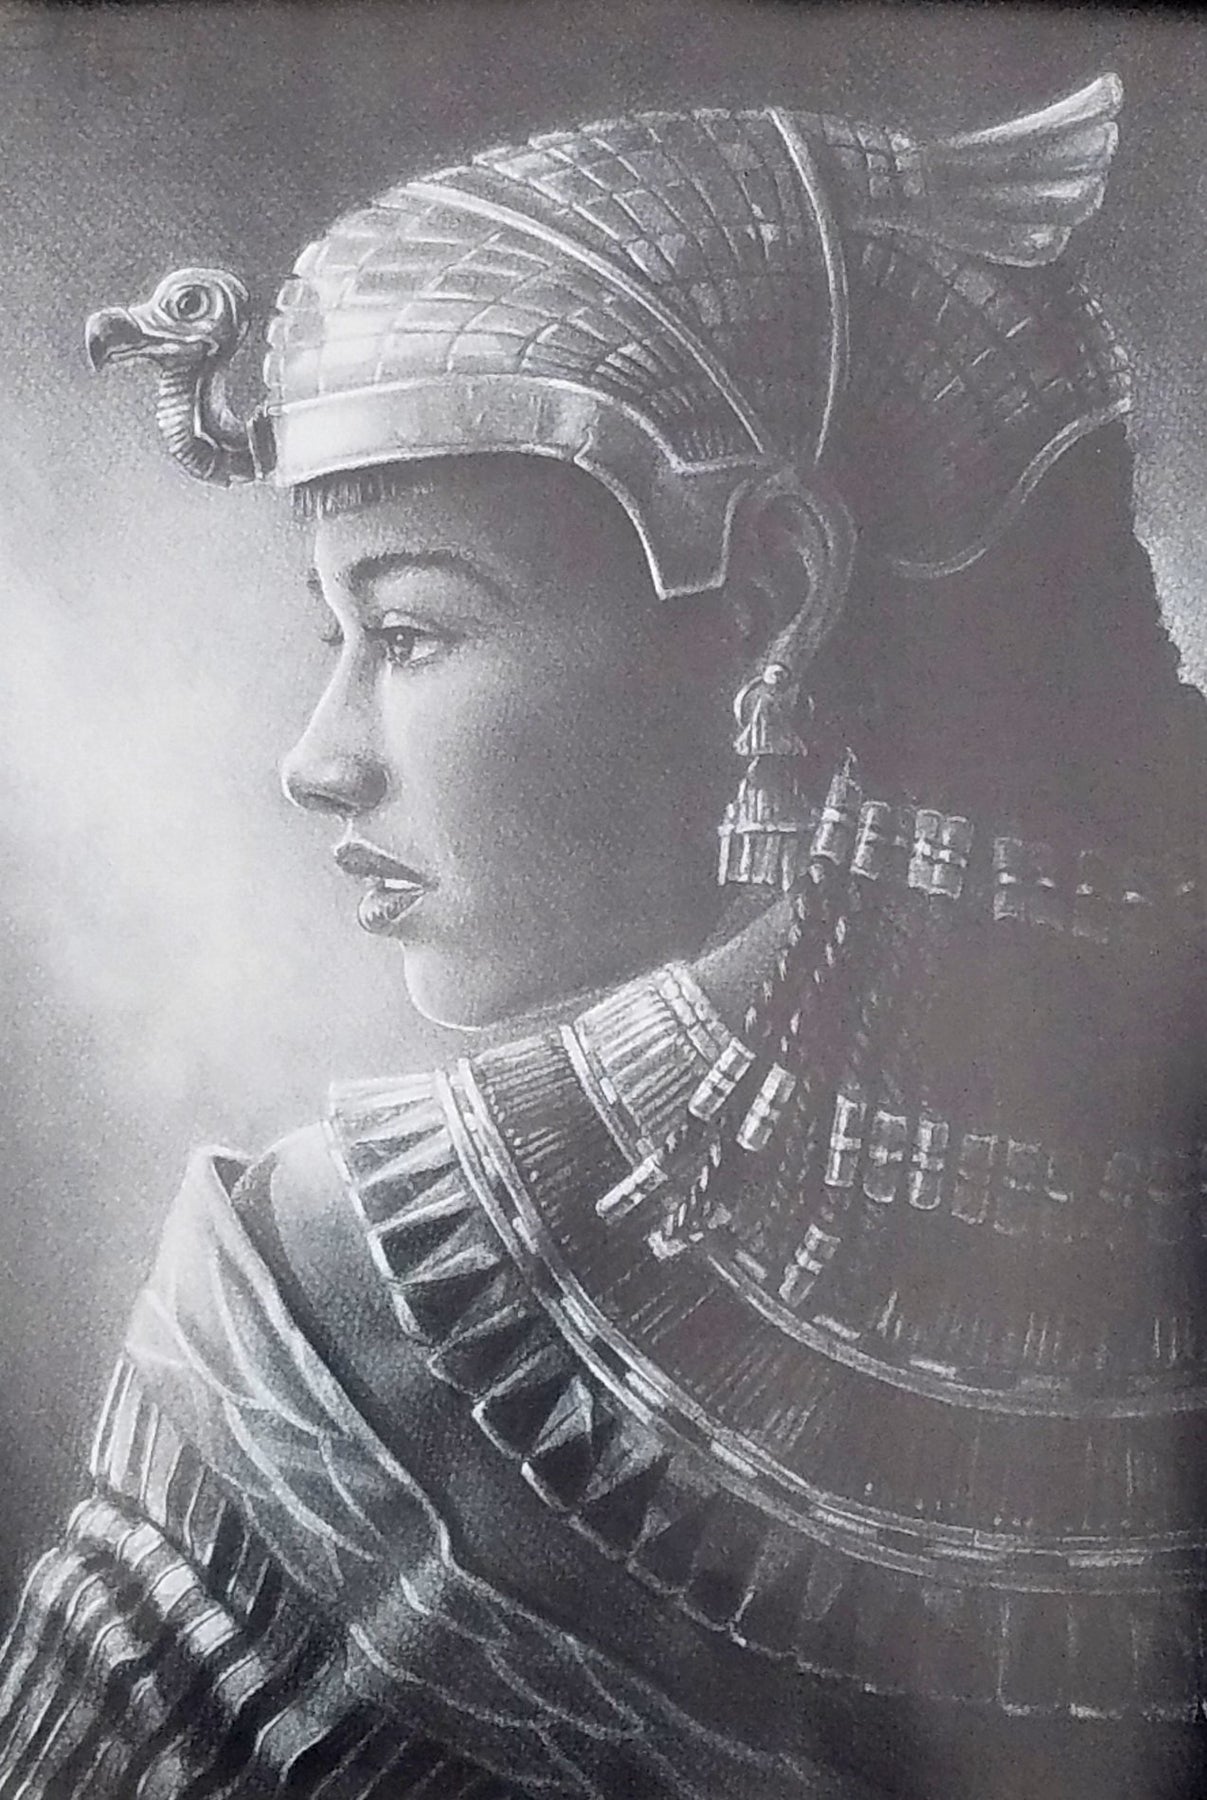 2 of 3: Nefertari by Jay C. Bakari